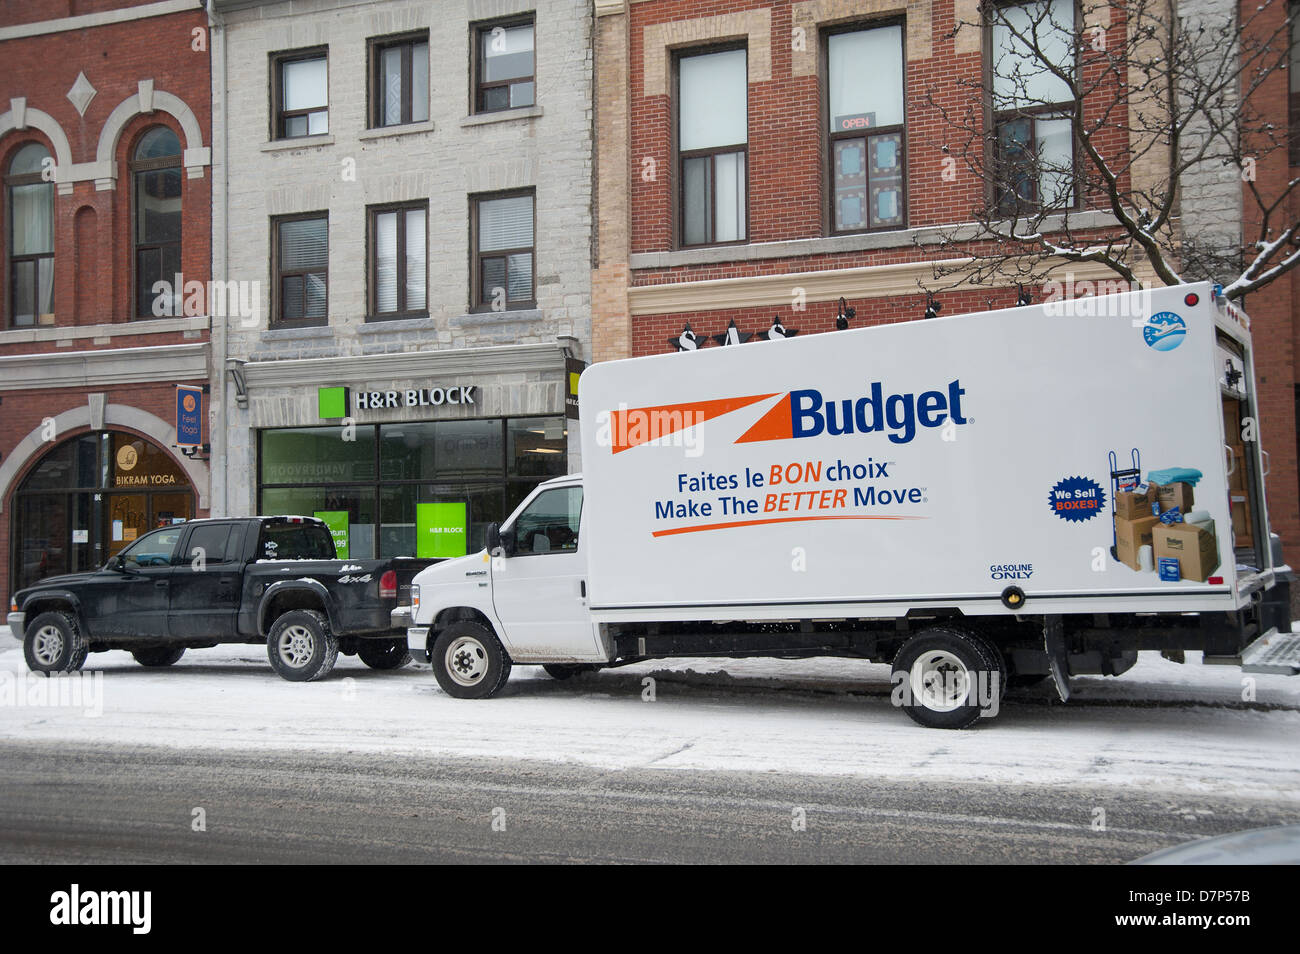 Chariot de location Budget pour déménagement sur une rue principale, à Kingston, Ontario, Canada Banque D'Images